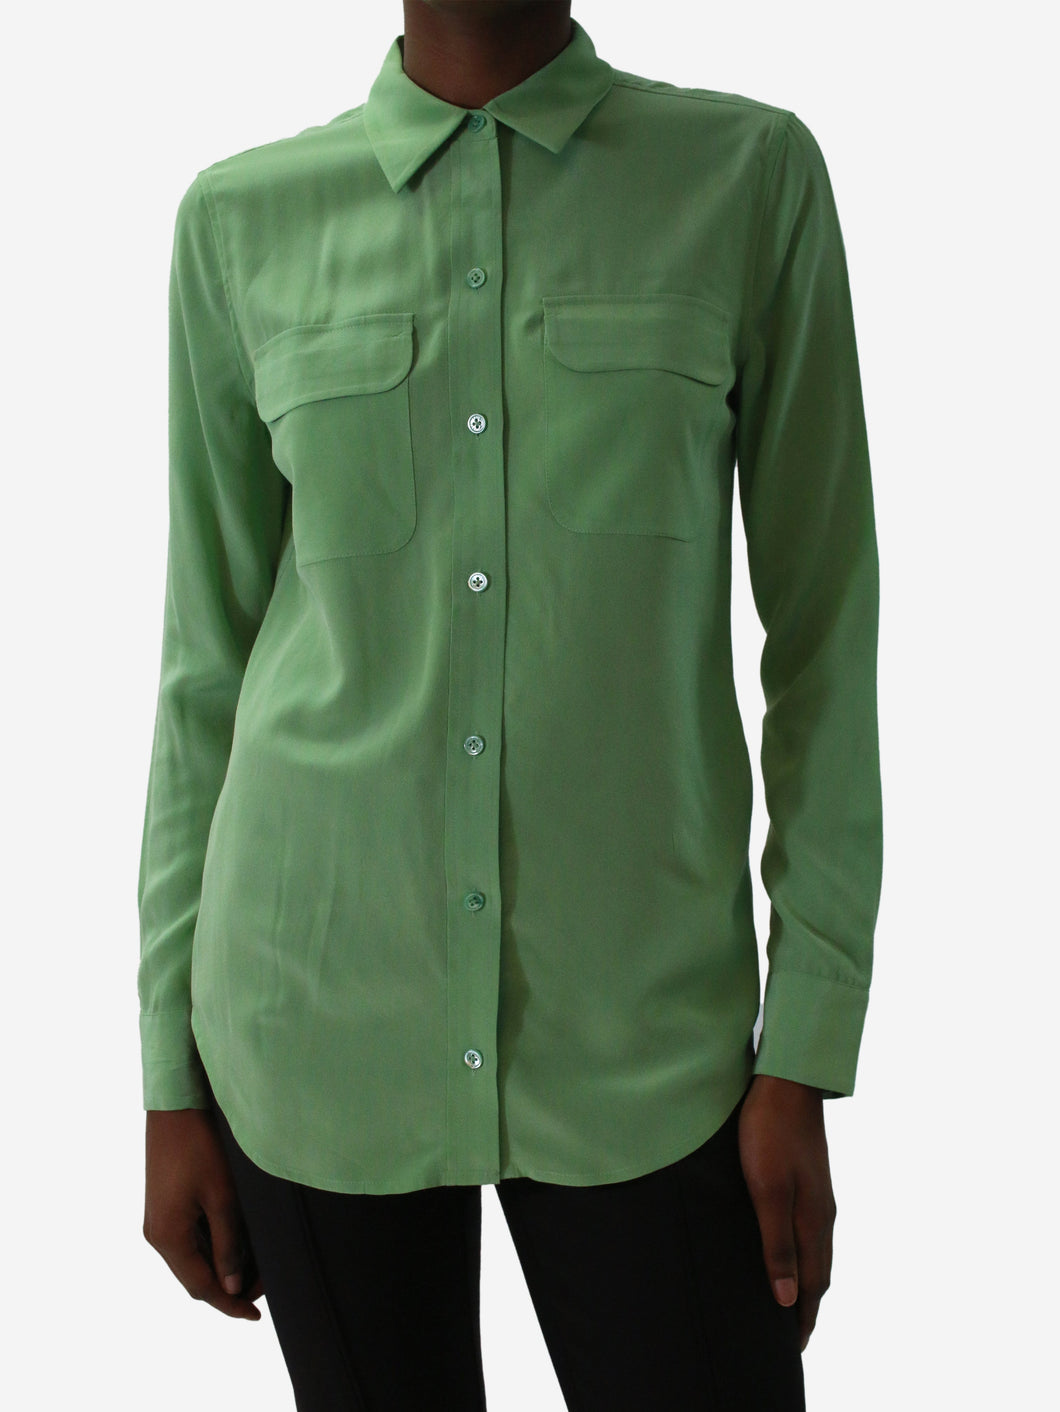 Green button-up silk shirt - size XS Tops Equipment 